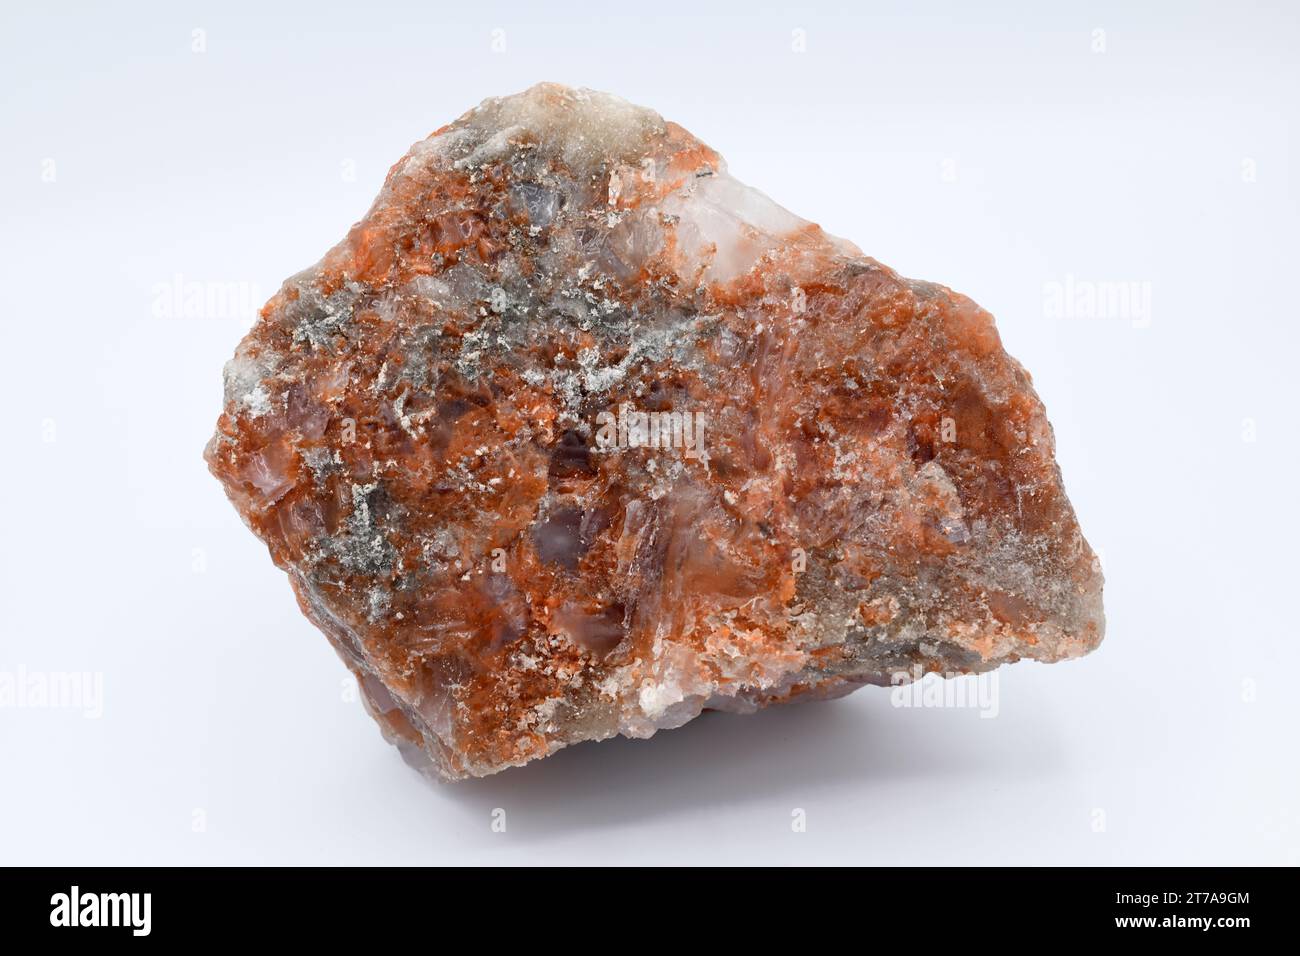 La polihalite è un minerale di potassio magnesio solfato di calcio con inclusioni di ossido di ferro. Questo campione proviene da Cardona, Barcellona, Catalogna, Spagna. Foto Stock